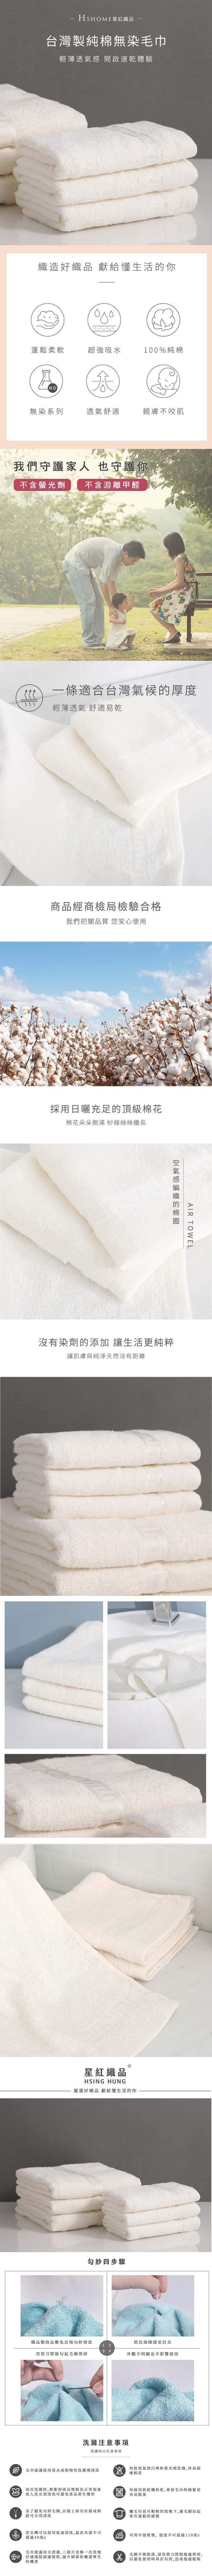 星紅織品 台灣製純棉無染毛巾-12入組 推薦